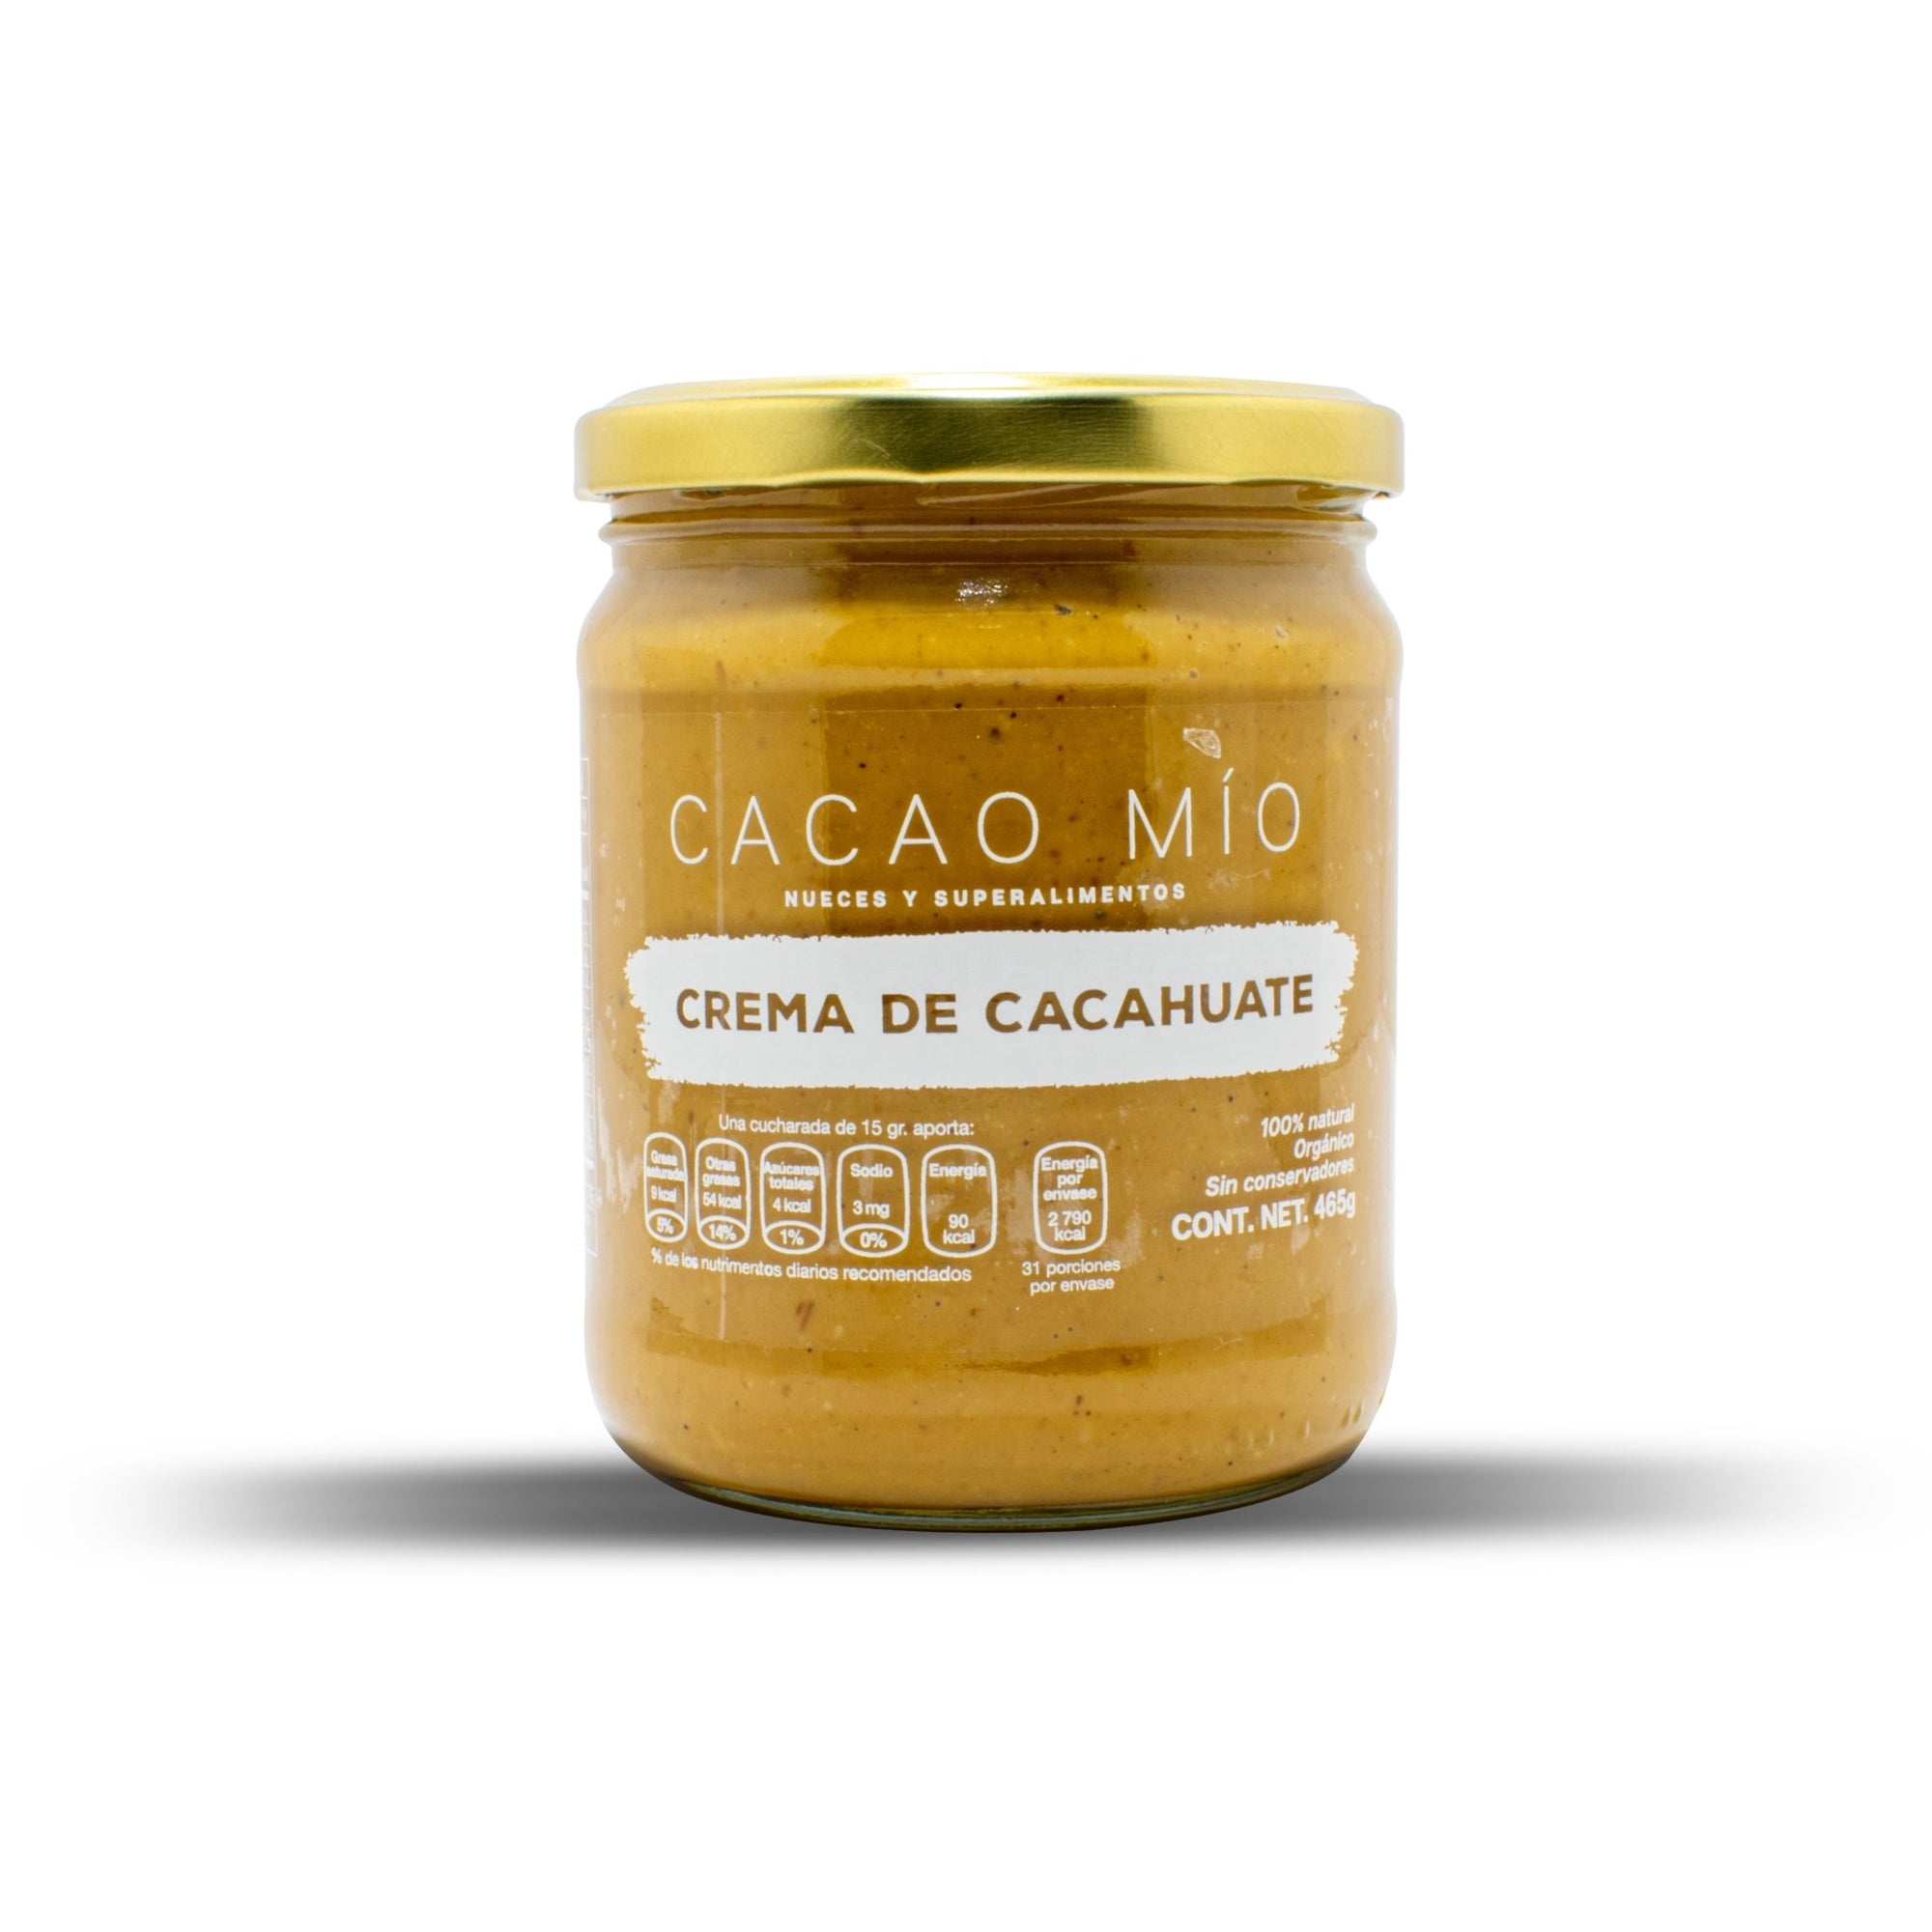 Crema de Cacahuate Cremosa - cacaomio.com